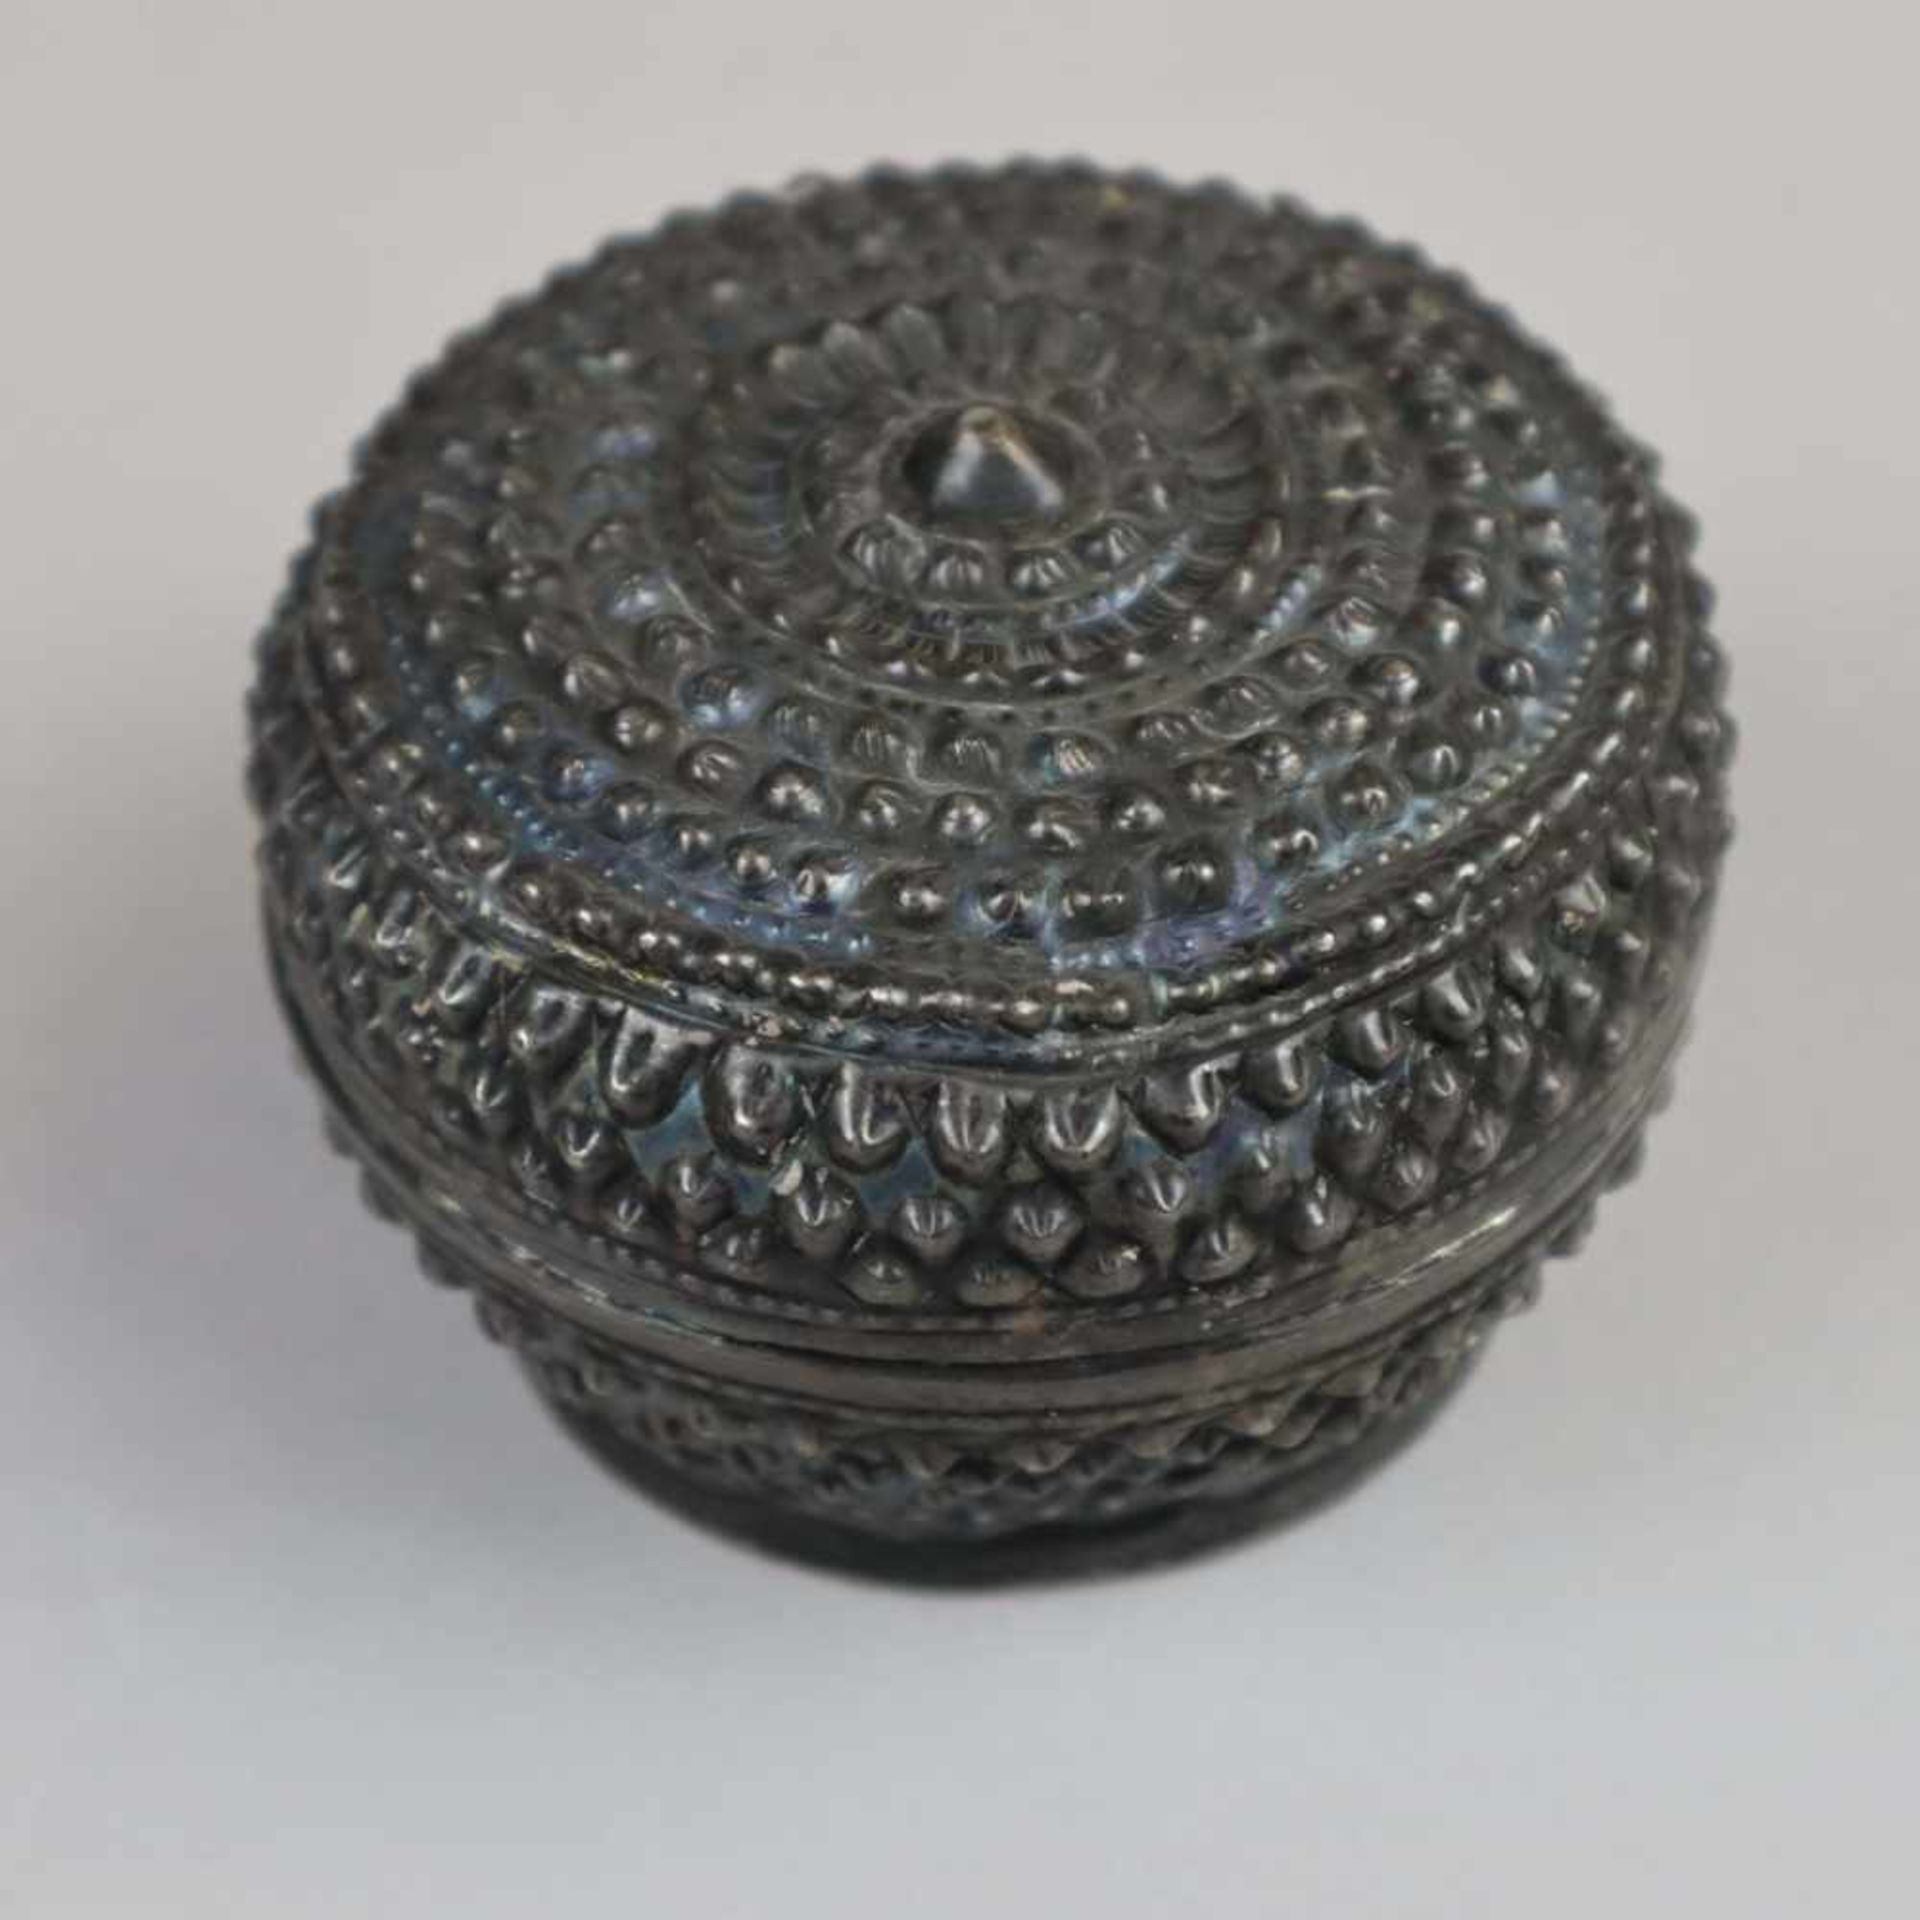 Orientalische Silberdose - auf rundem Standring, Korpus und Stülpdeckel mit reichem Reliefdekor,